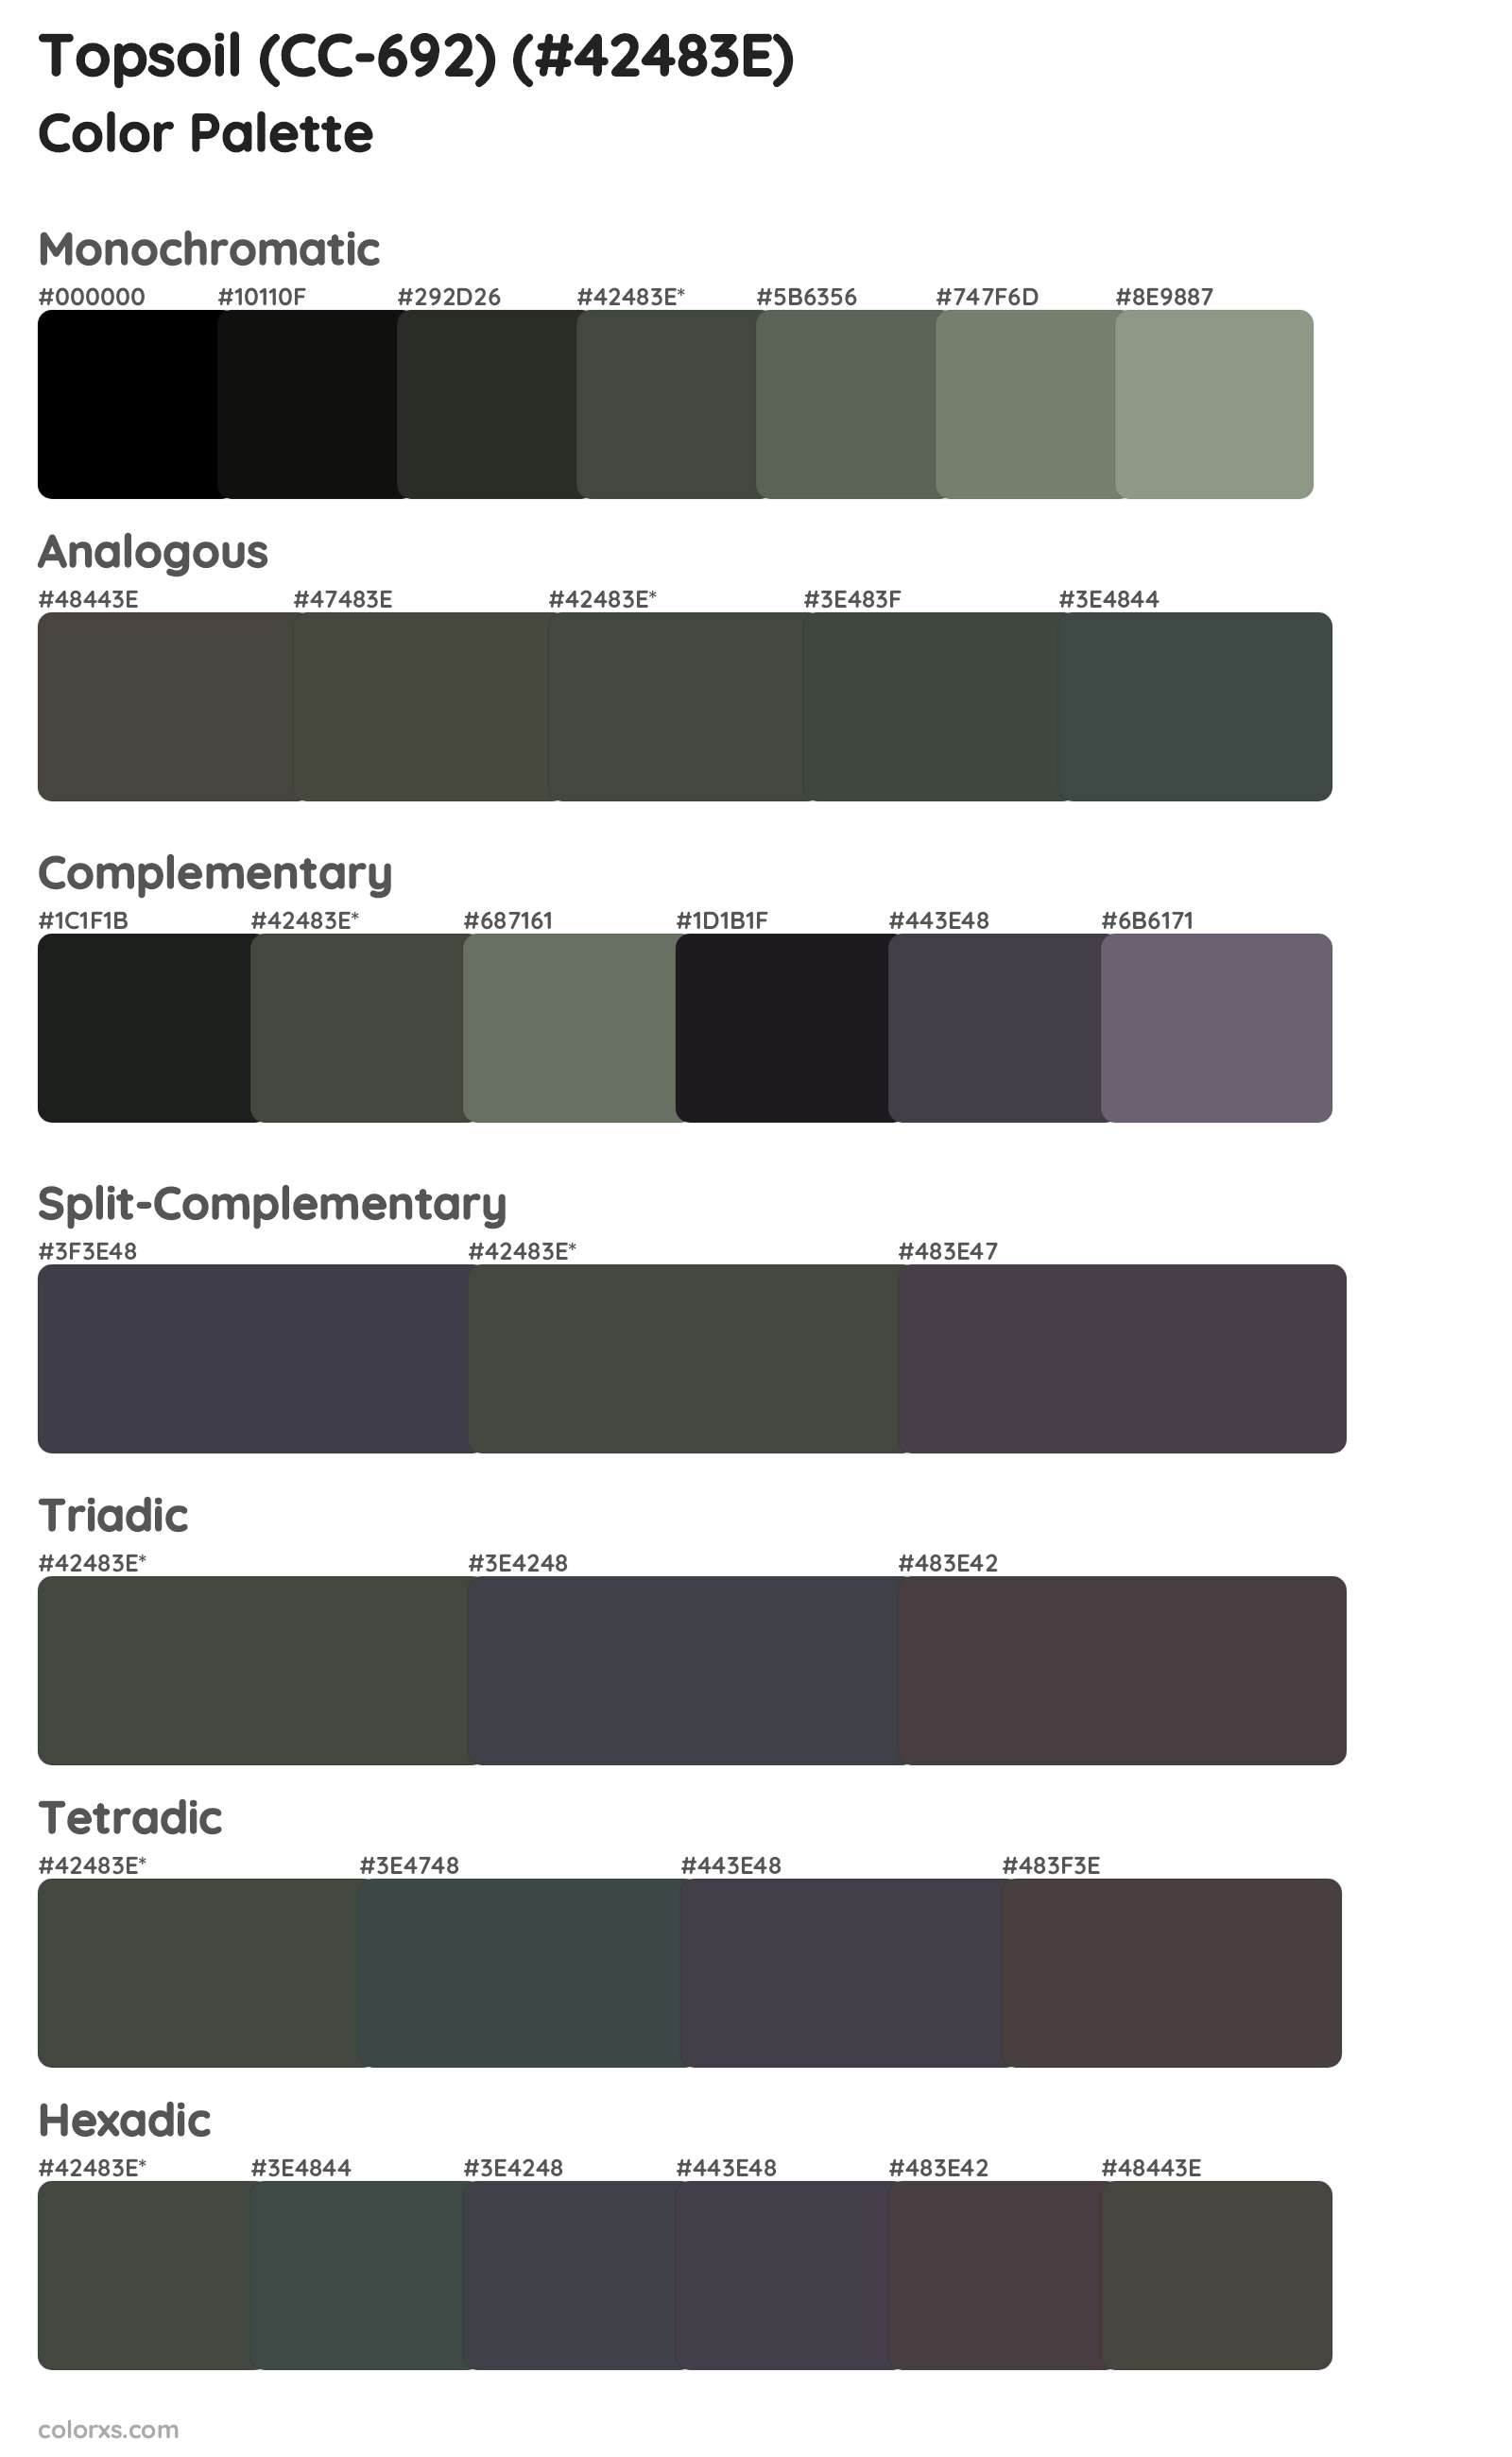 Topsoil (CC-692) Color Scheme Palettes